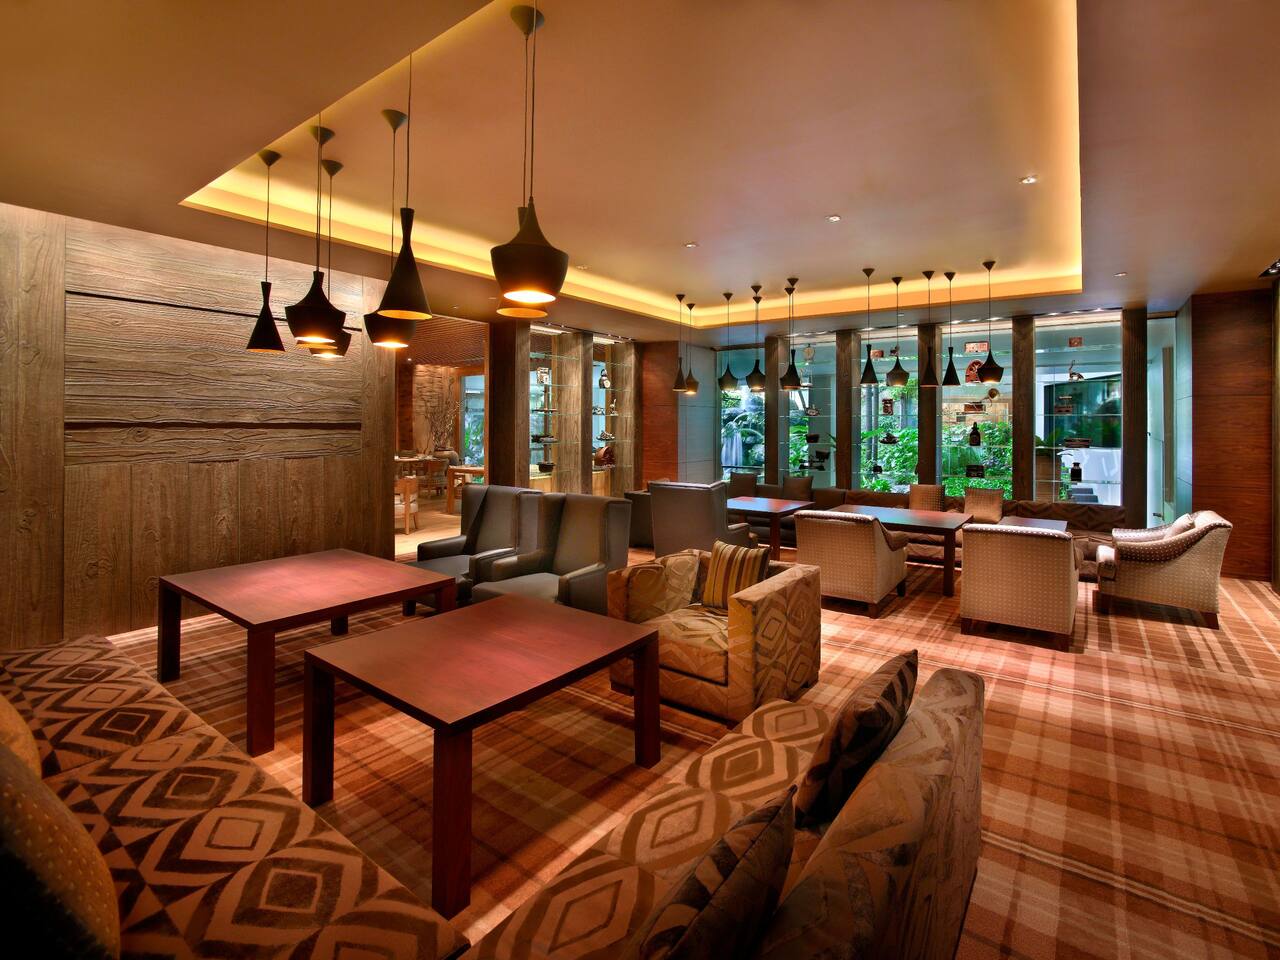 10 SCOTTS Grand Hyatt Singapore, Afternoon Tea & Best High Tea Buffets in Singapore